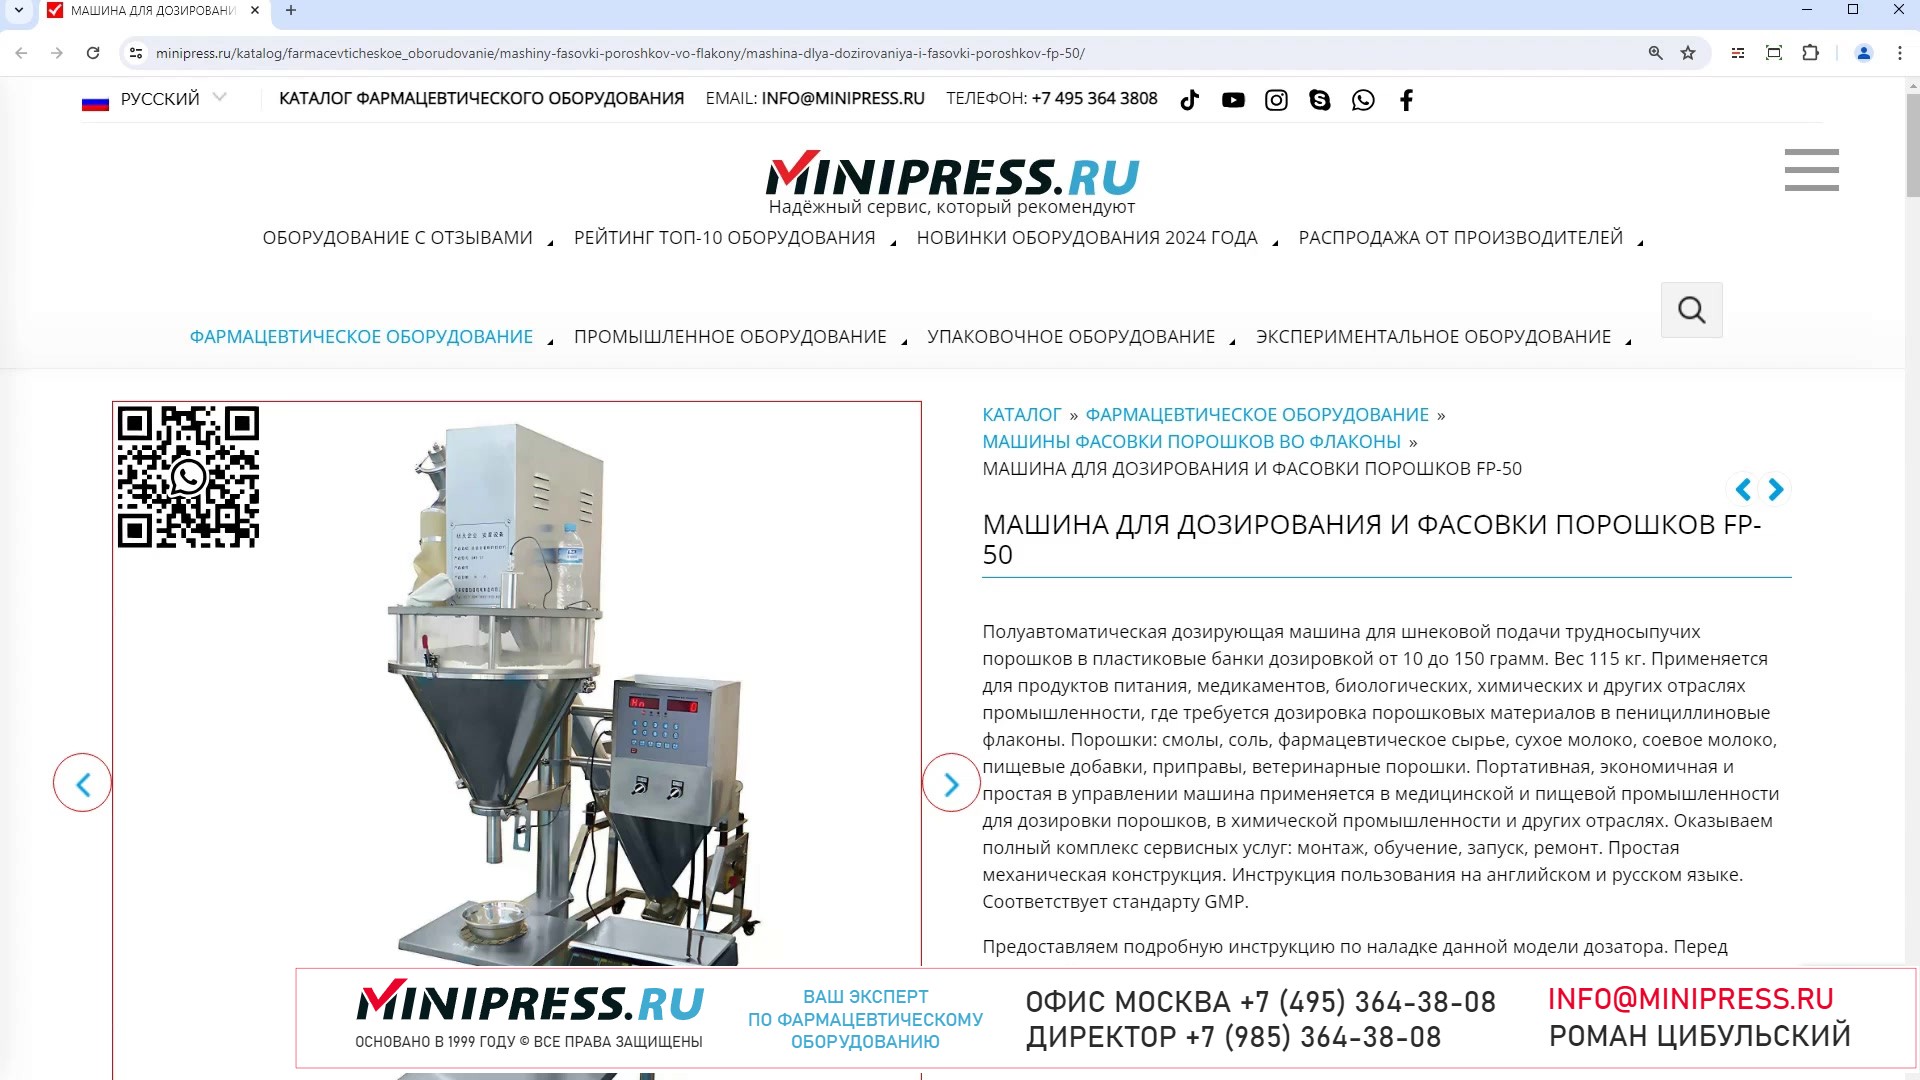 Minipress.ru Машина для дозирования и фасовки порошков FP-50